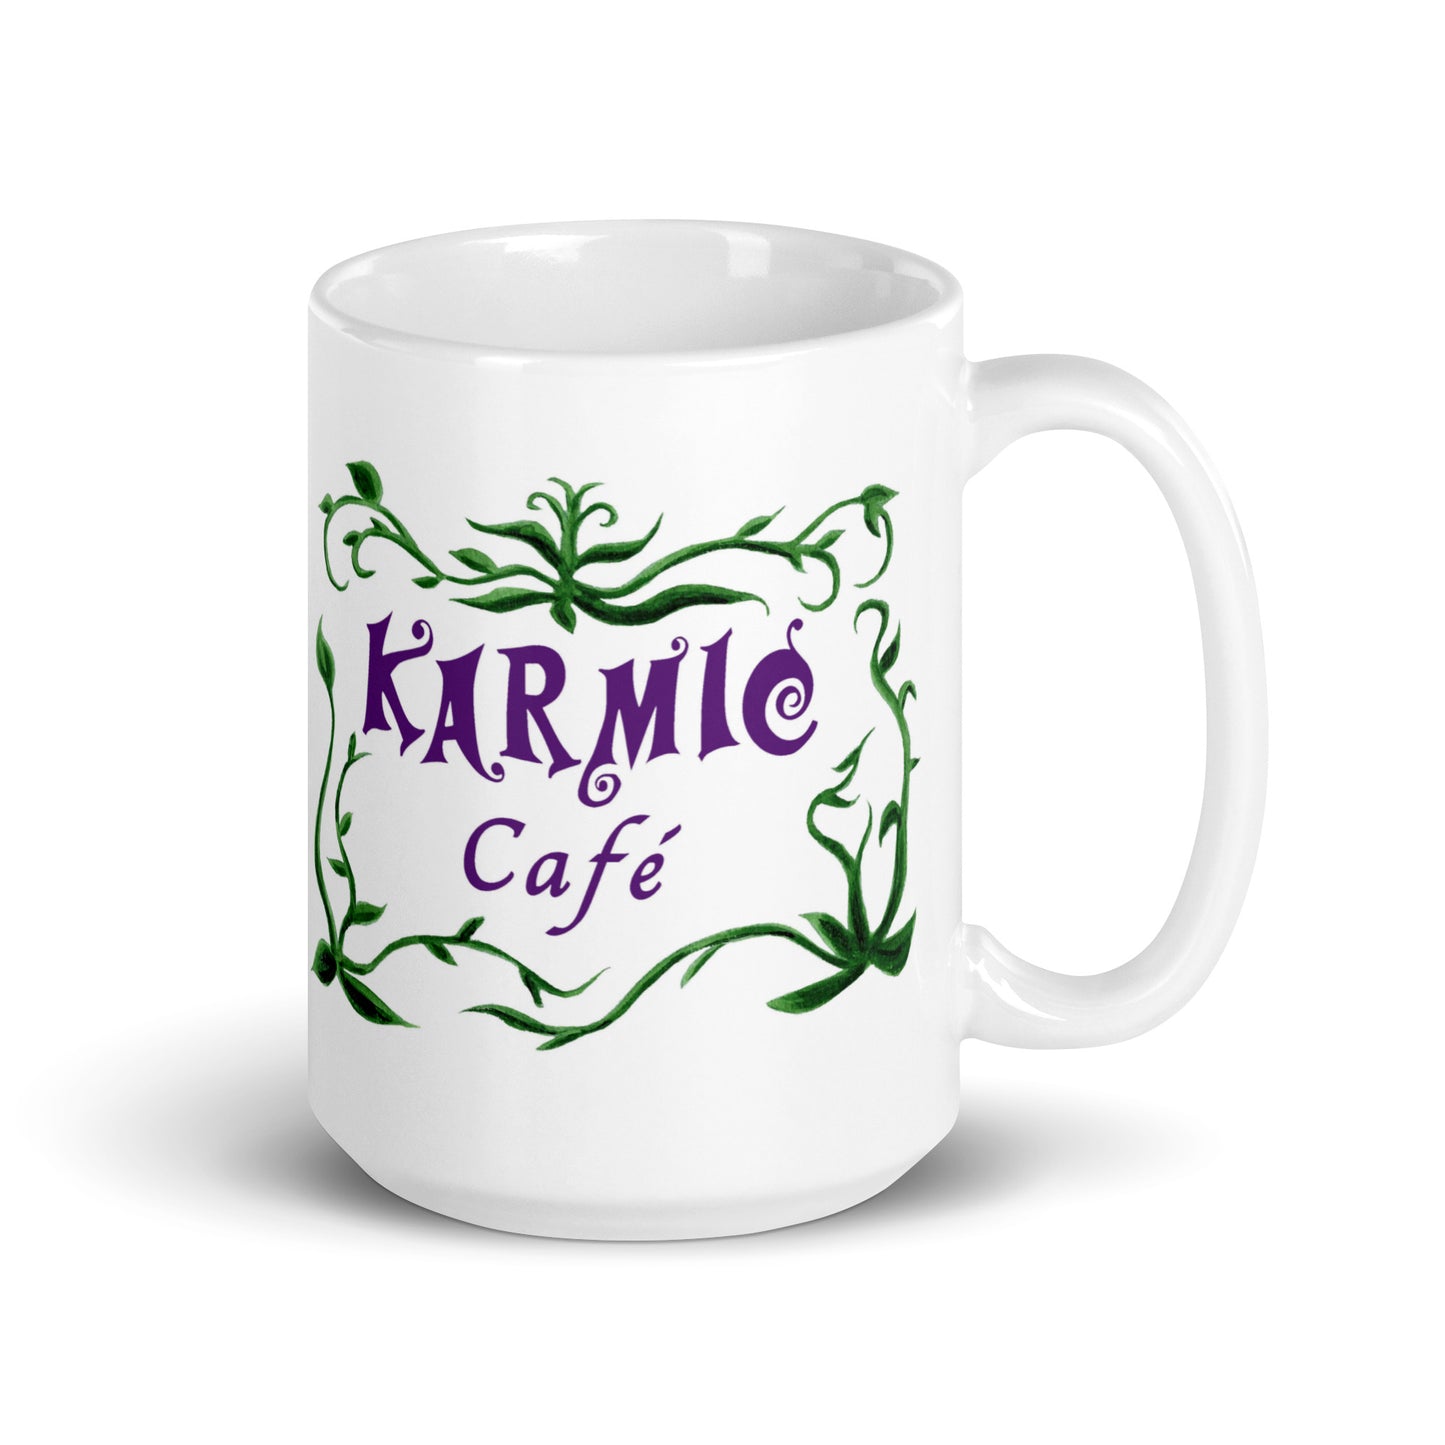 Fat Cat - Karmic Cafe Mug